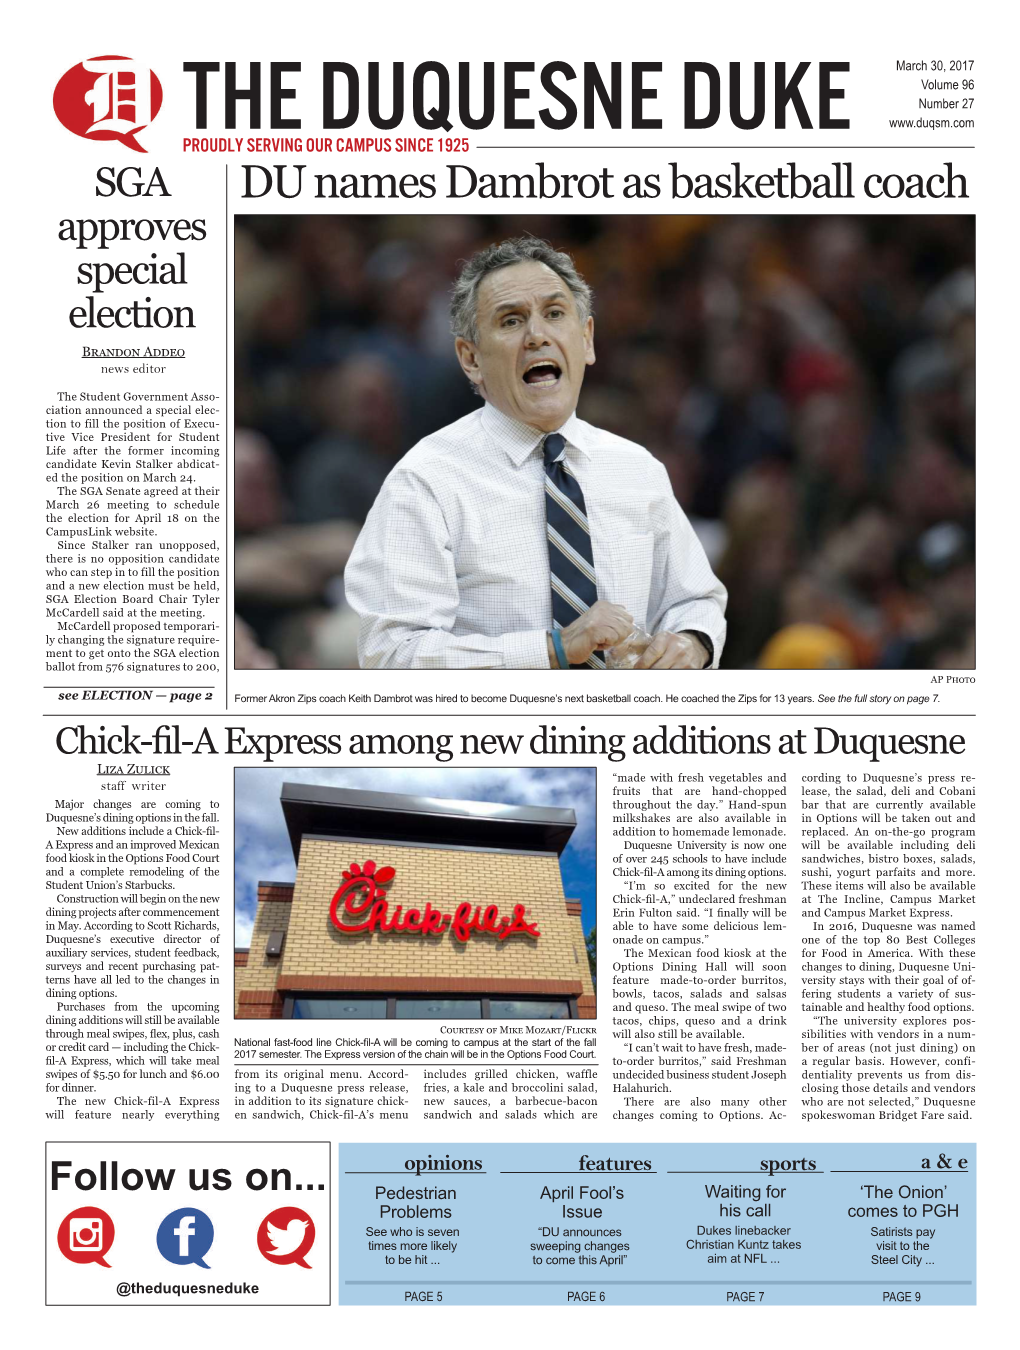 DU Names Dambrot As Basketball Coach Approves Special Election Brandon Addeo News Editor